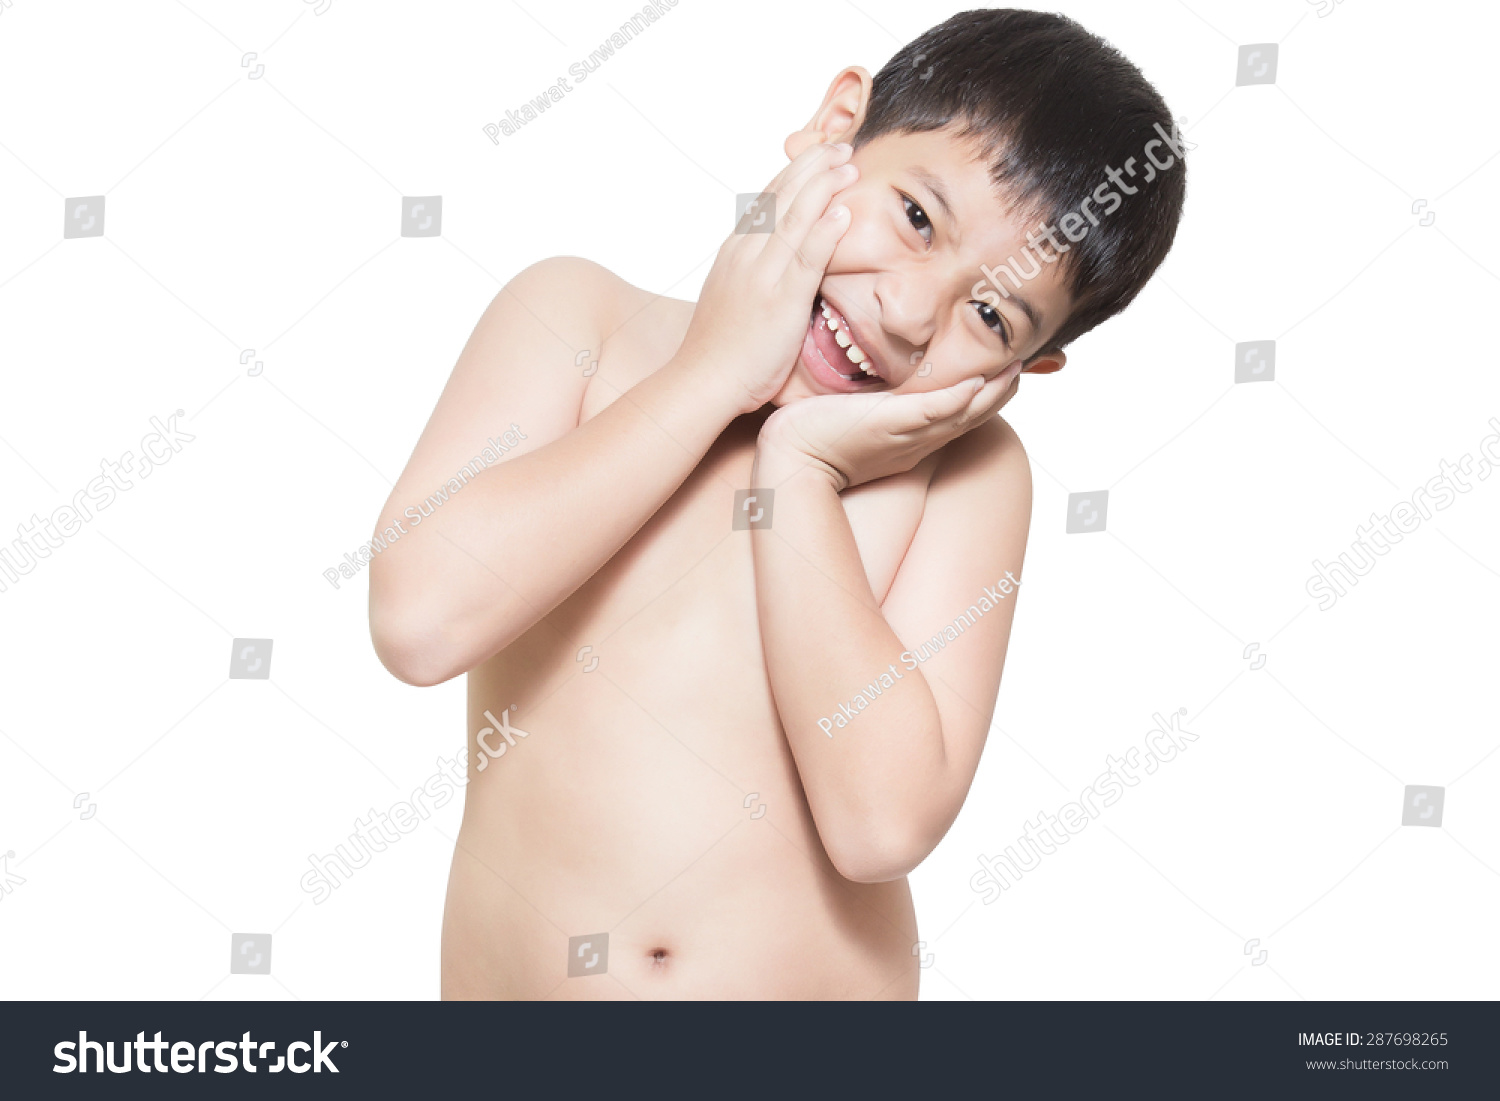 Asian Kid Nude